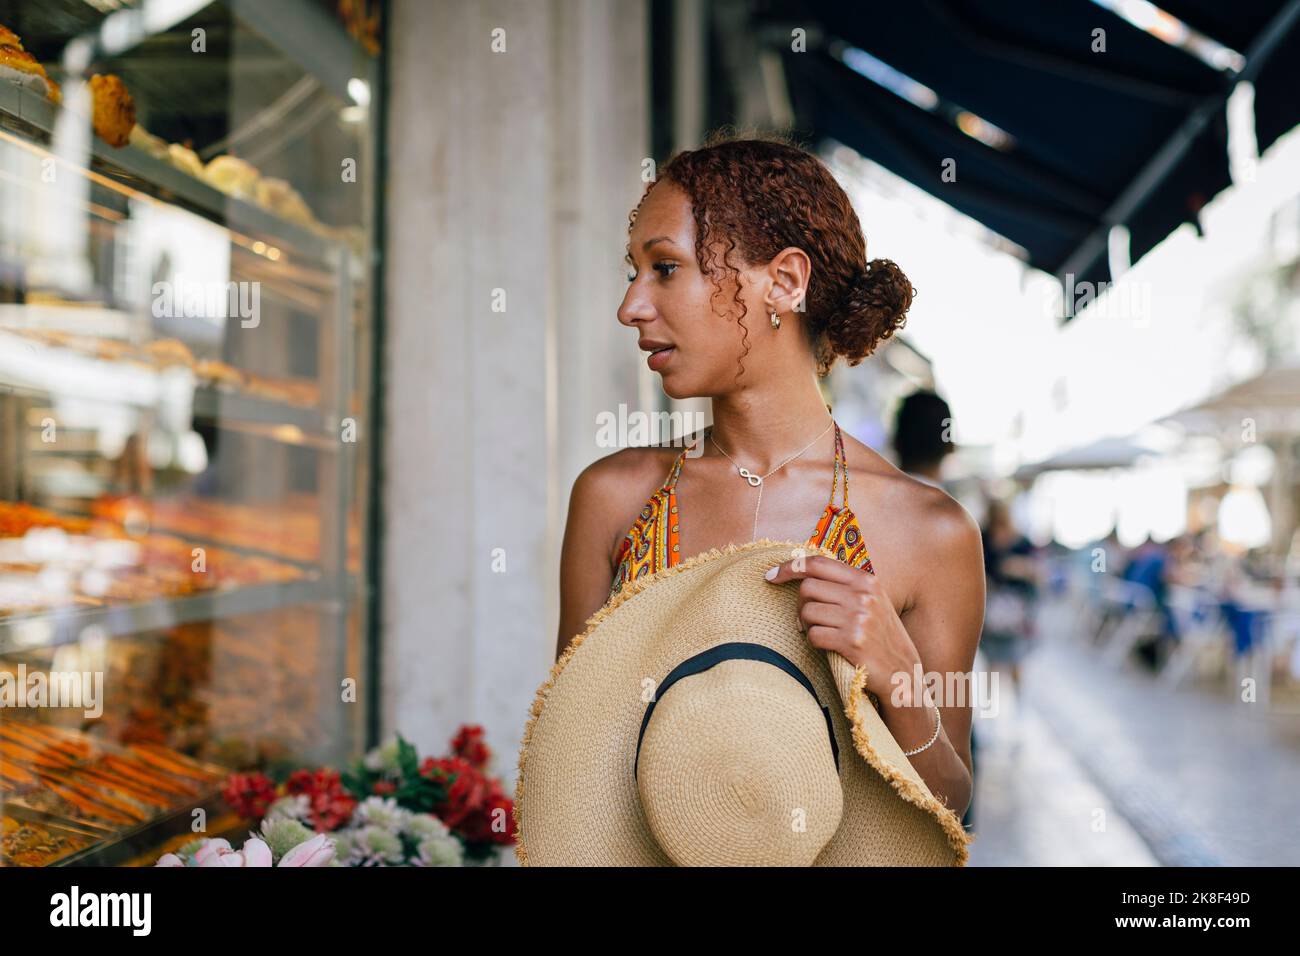 Hungrige junge Frau mit Hut, die durch das Fenster des Delikatessengeschäfts schaut Stockfoto